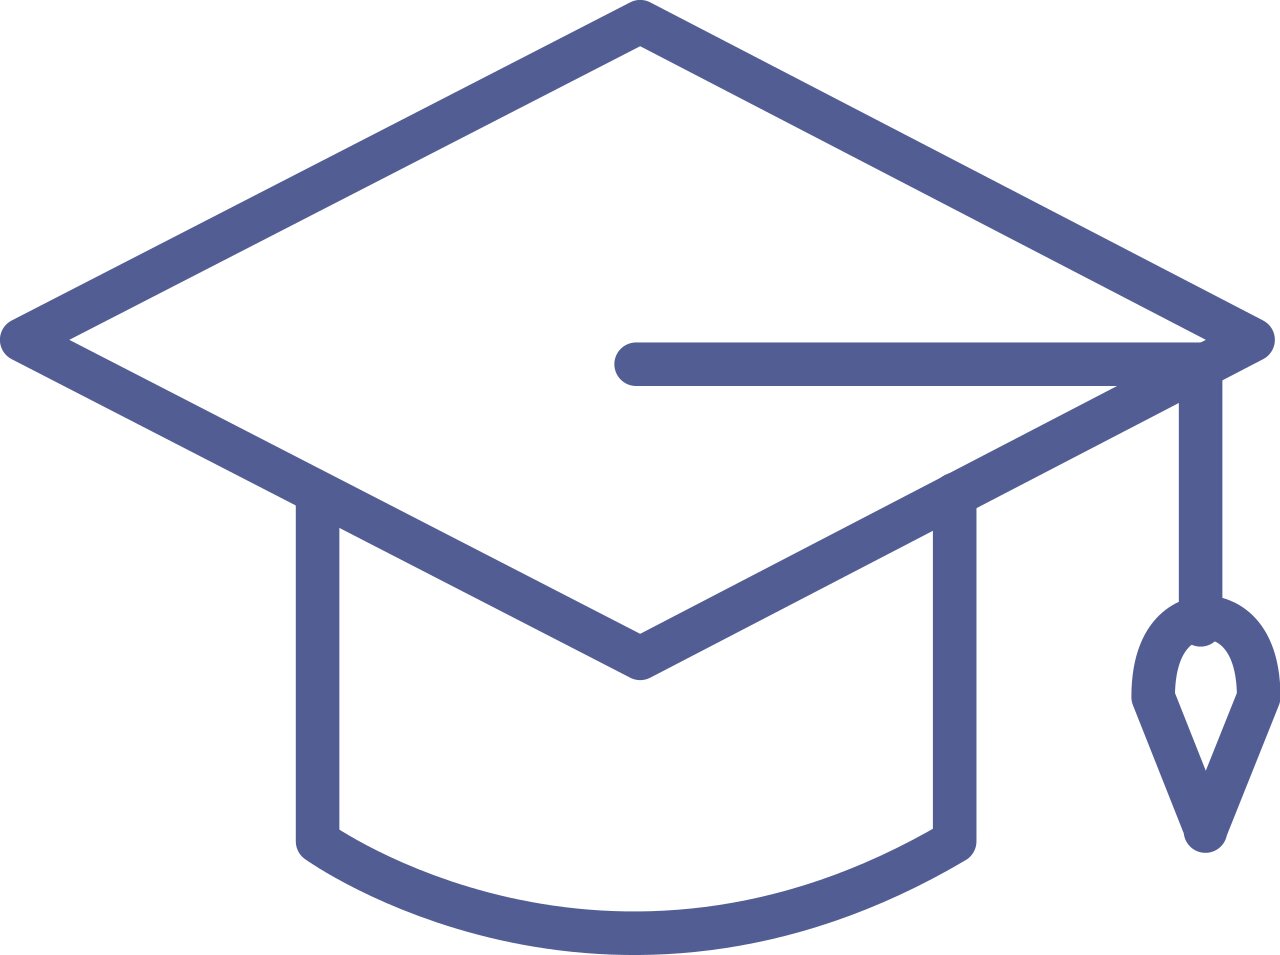 Digital graphic of a graduation cap